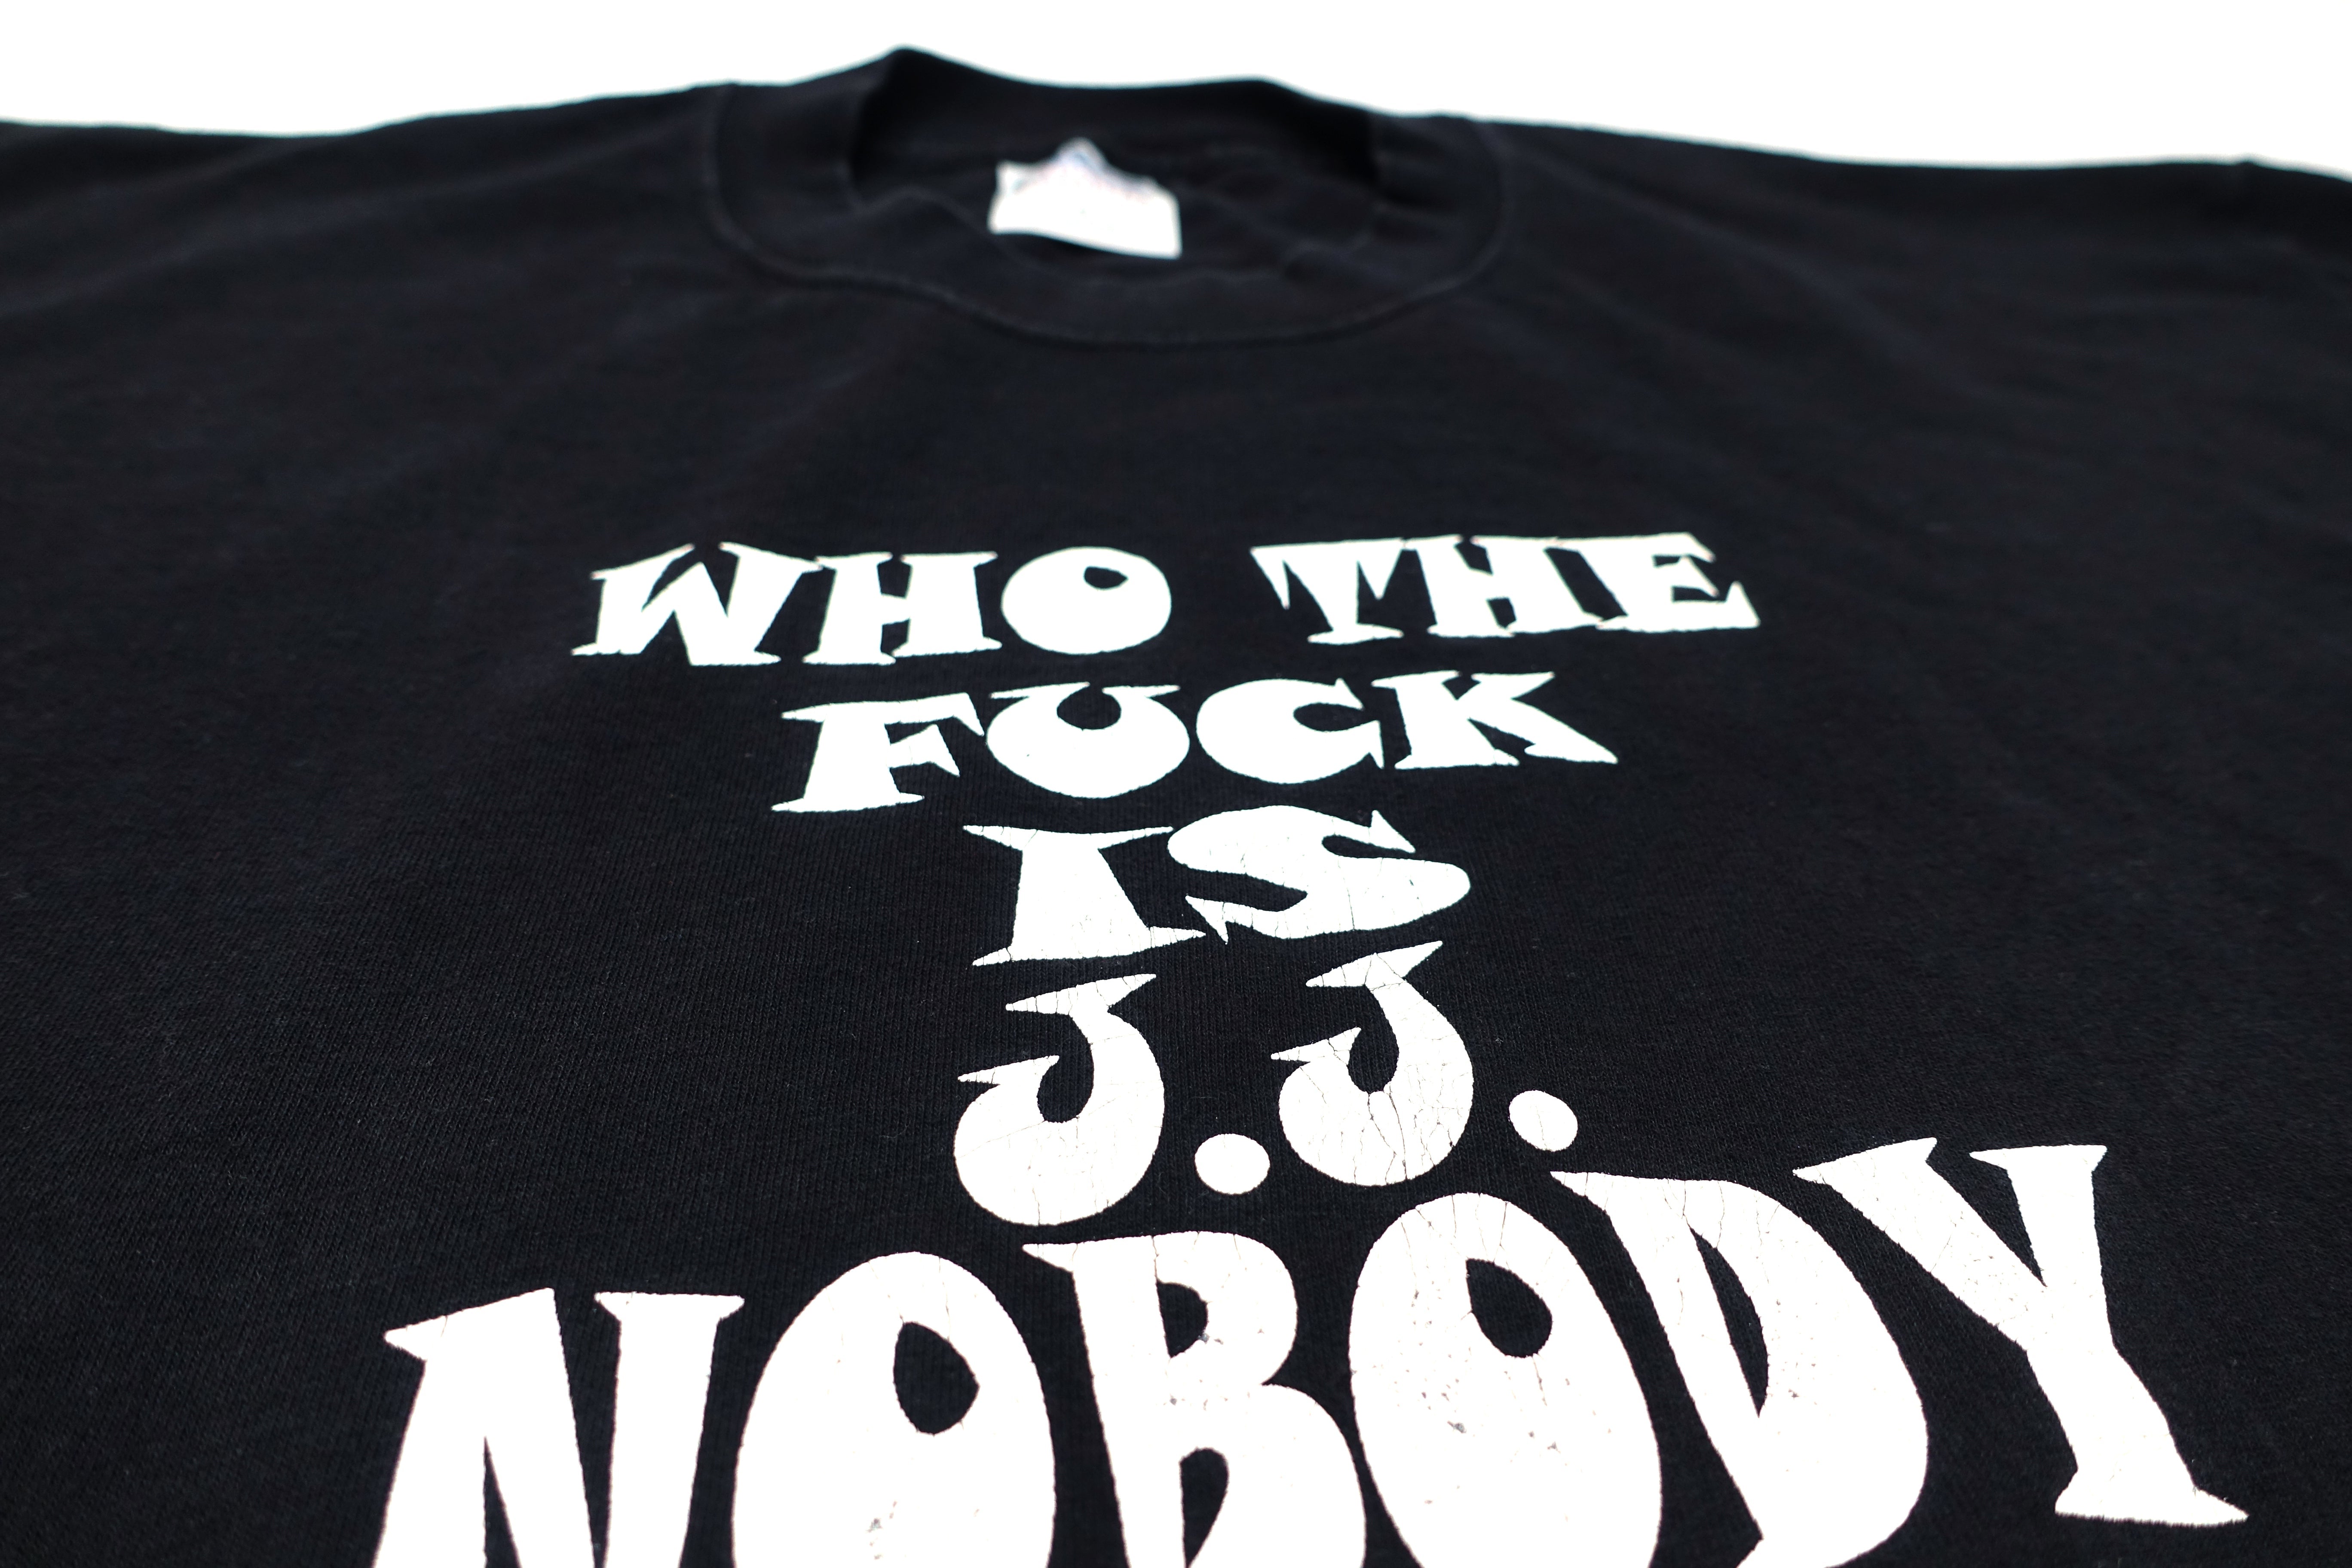 Nobodys - Who The Fuck Is JJ Nobody? 2001 Gruetour Shirt Size XL (Copy)